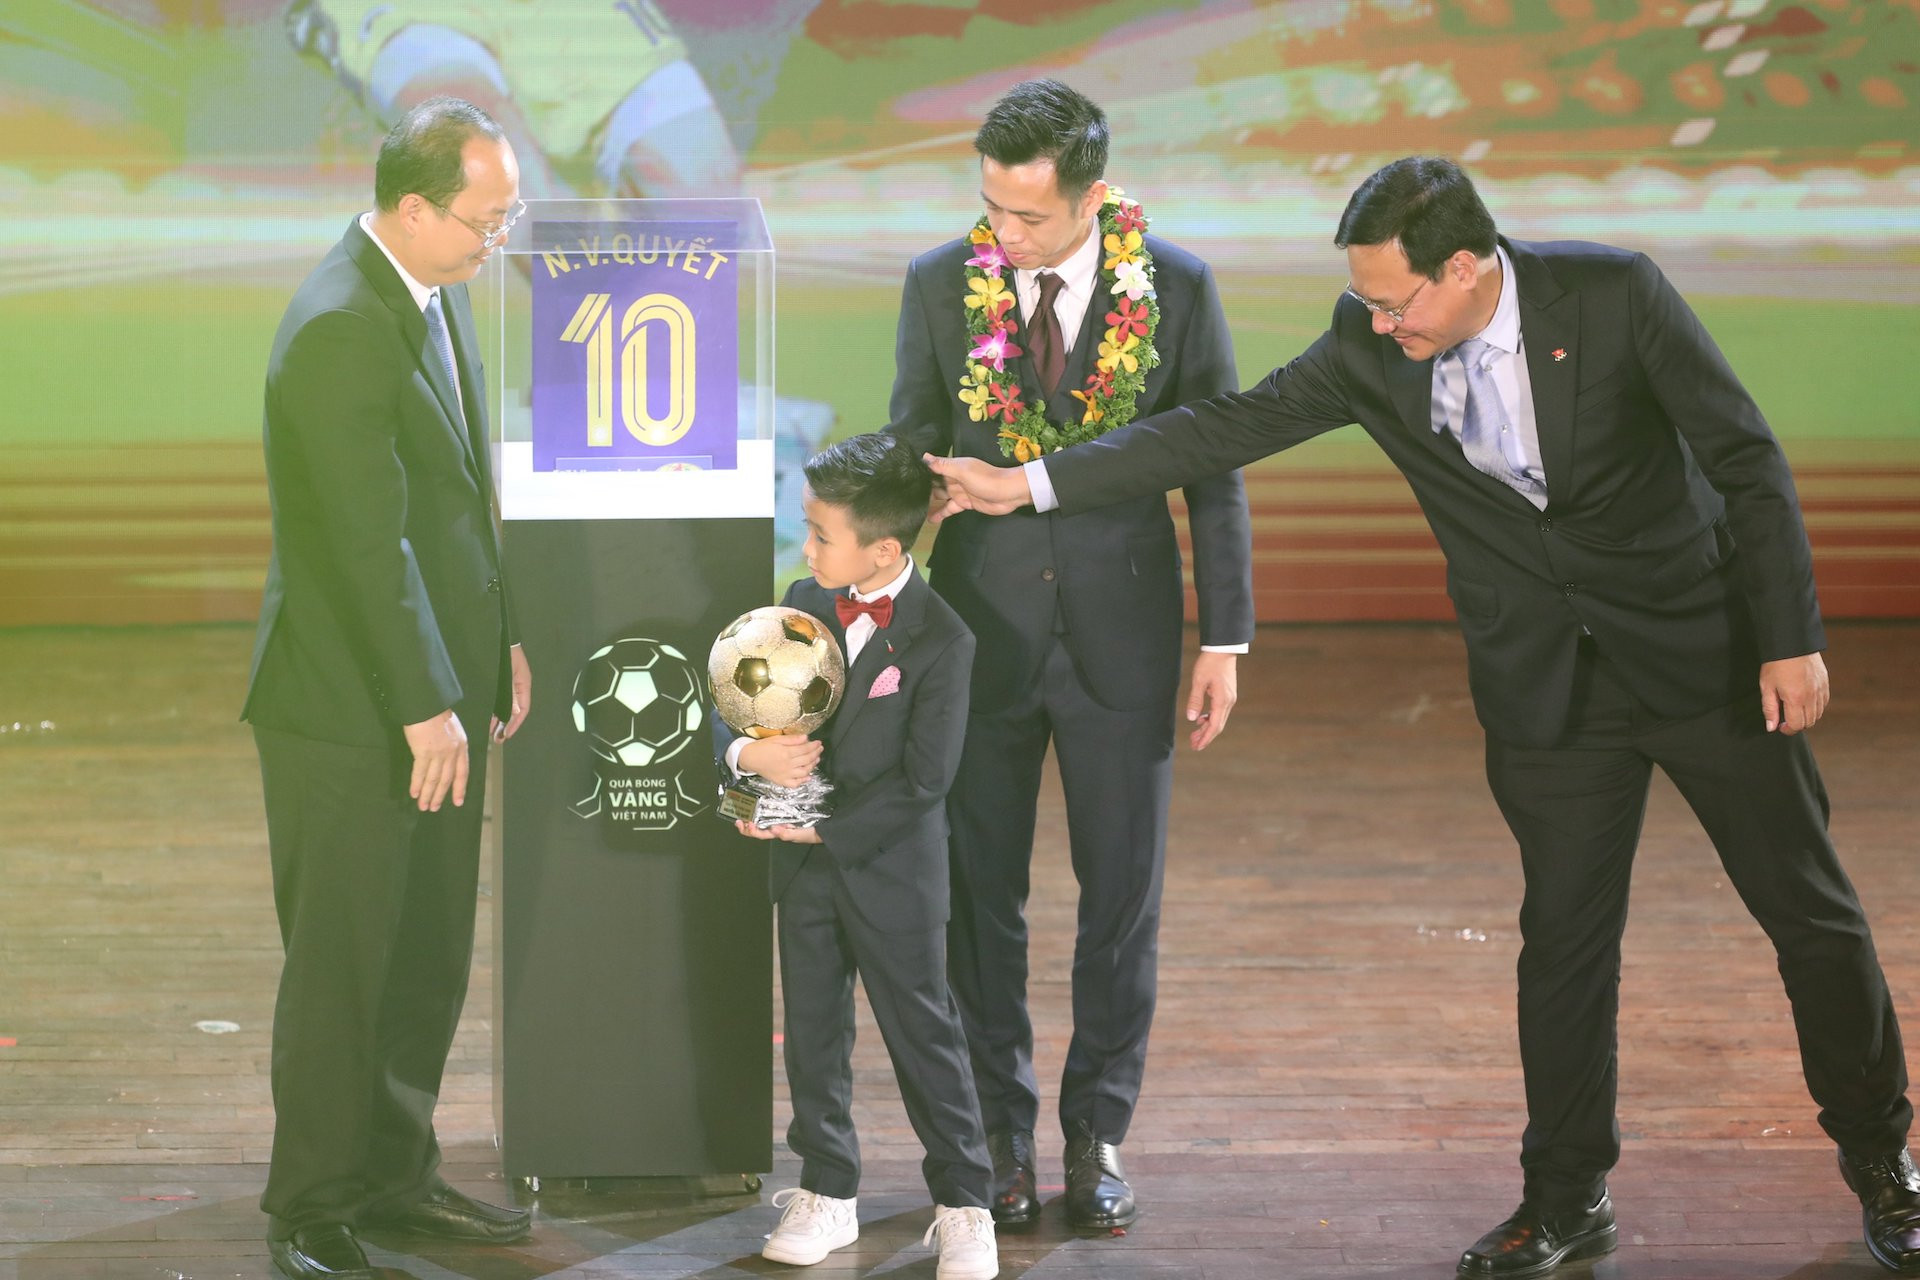 Ngay khi nhận danh hiệu cao quý, thủ quân Hà Nội FC dành nhiều lời tri ân cho đội nhà, CLB Viettel nơi đào tạo và đặc biệt tới gia đình của mình. Ngay sau đó Văn Quyết trao Qủa bóng vàng cho cậu con trai Văn Quân.